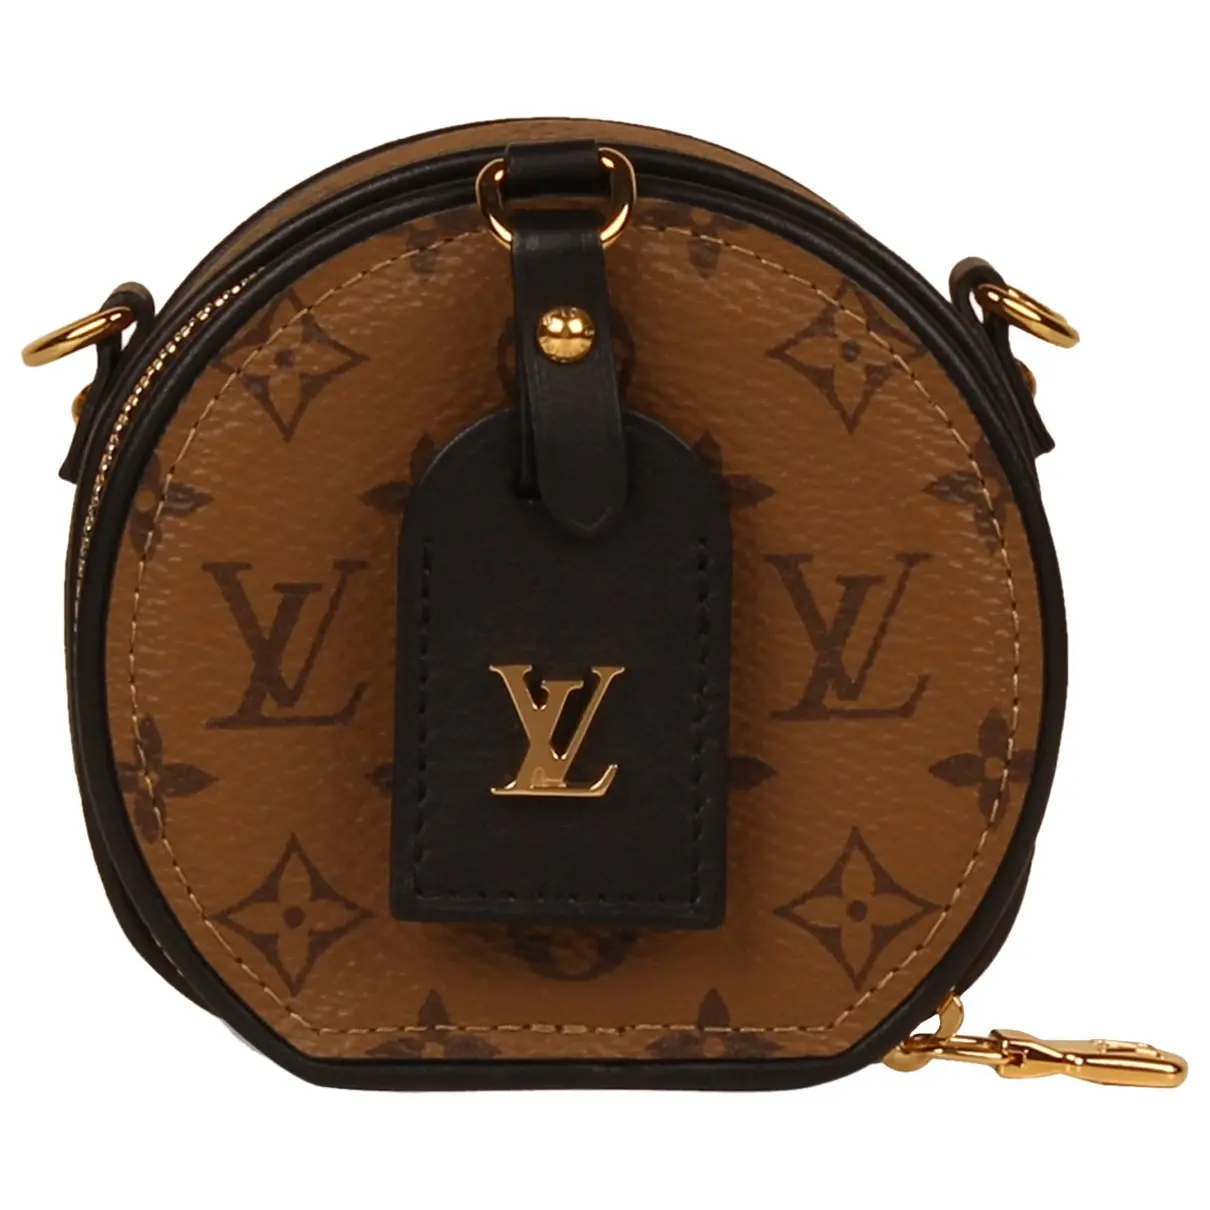 Petite Boîte Chapeau cloth handbag Louis Vuitton